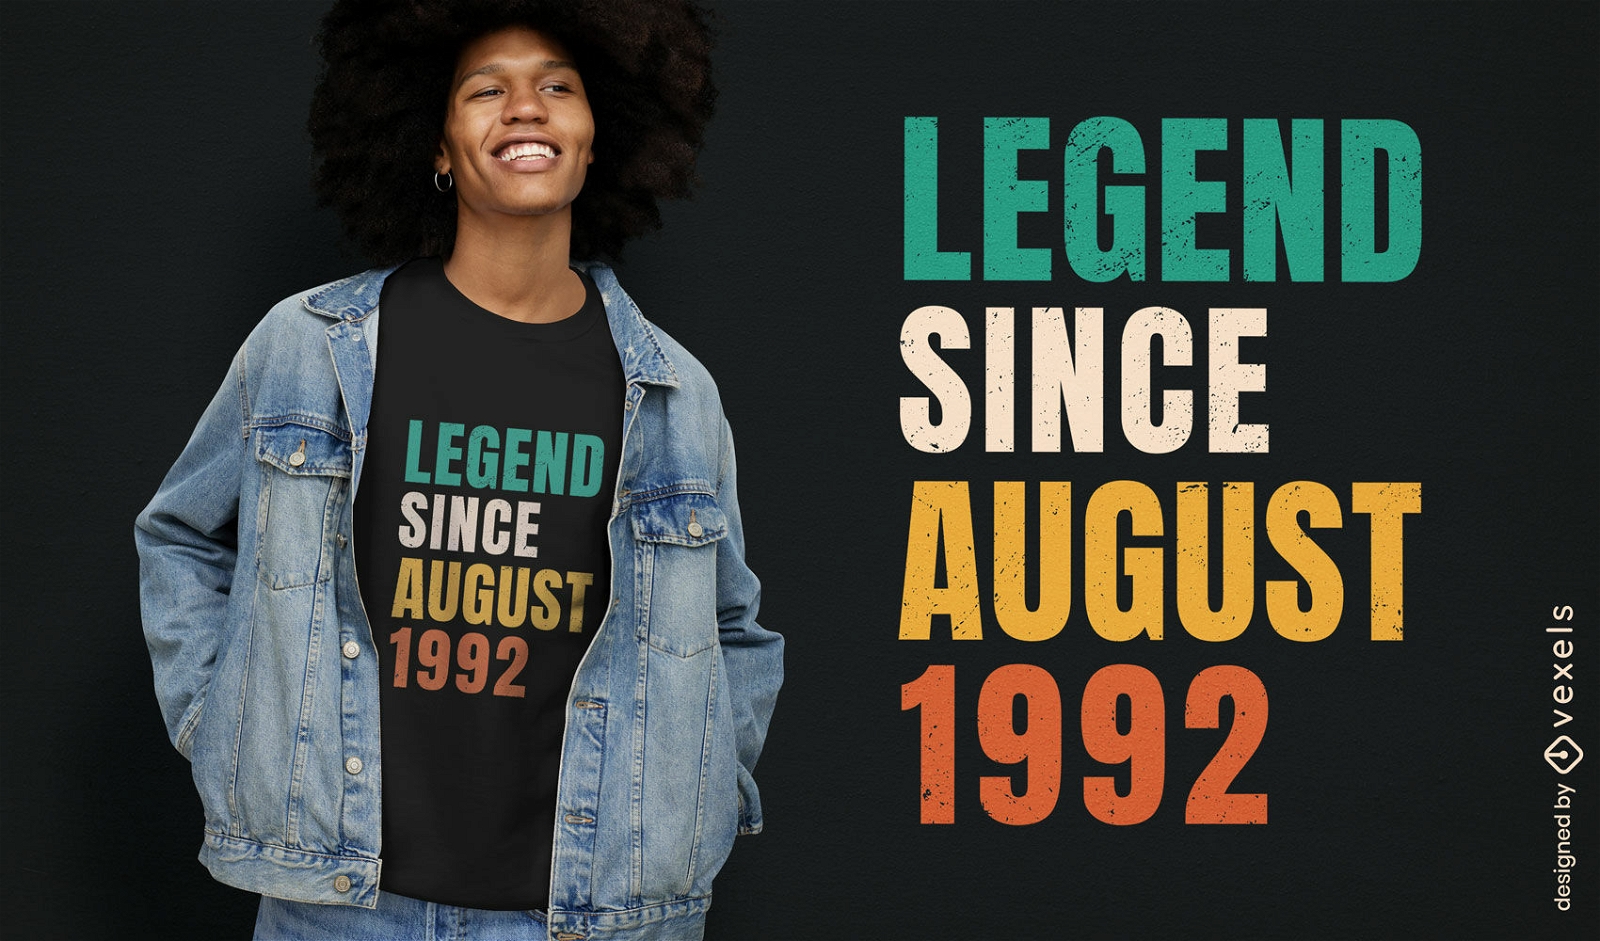 Legend since august 1992 t-shirt design